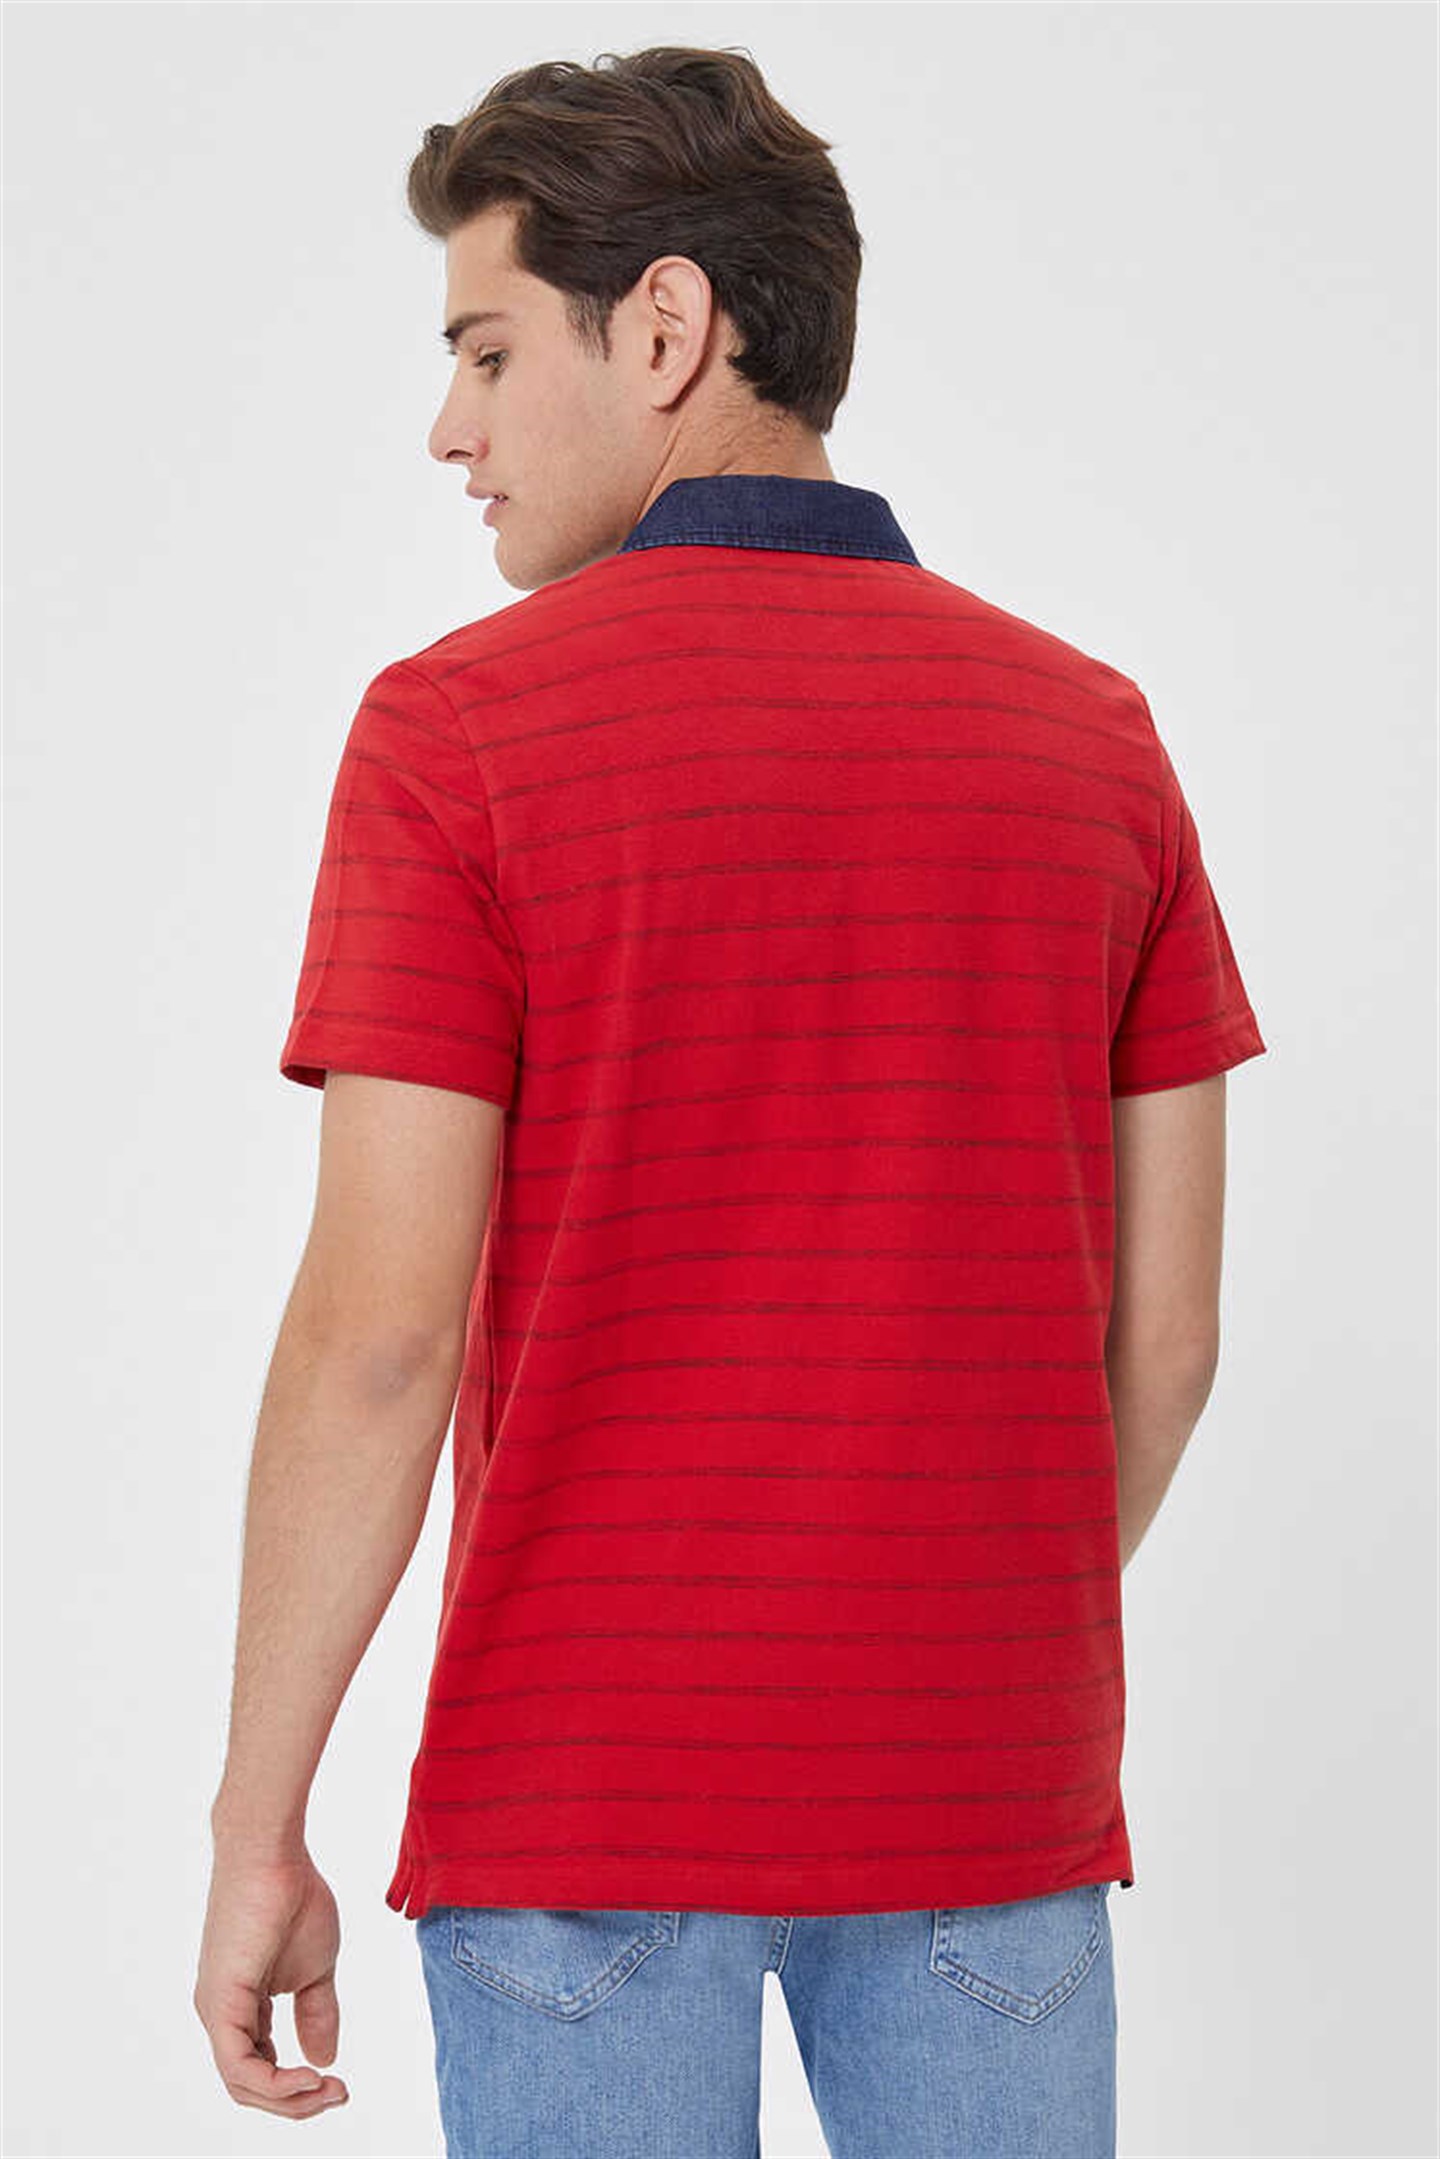 Lee Cooper Matty Erkek Denim Yaka T-Shirt Kırmızı Çizgili. 3